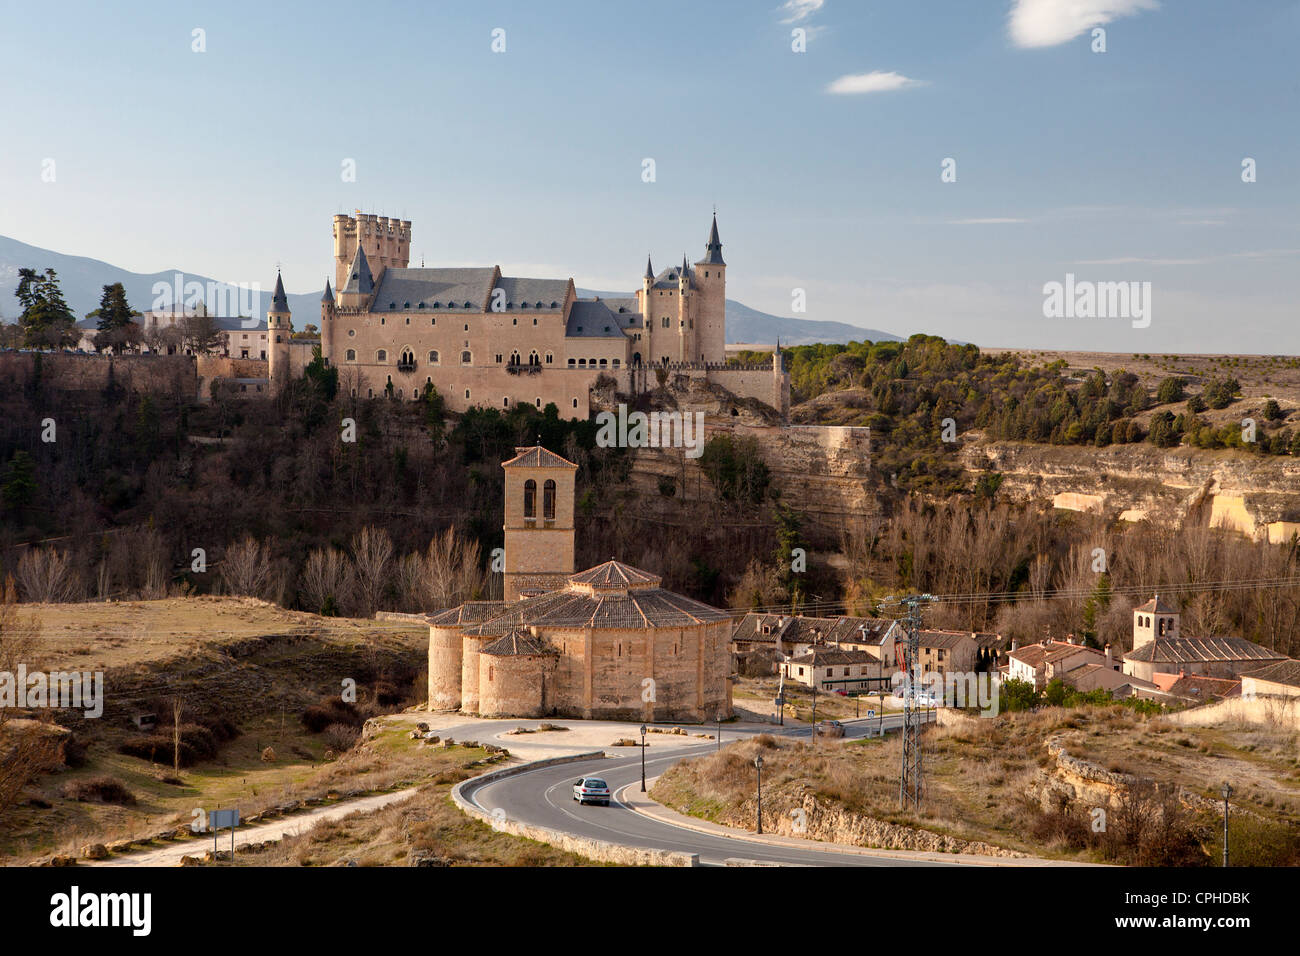 Spanien, Europa, Segovia, Vera Cruz, Alcazar, Architektur, Kastilien, Burg, katholischen, Kirche, Geschichte, Religion, Rückeroberung p Stockfoto